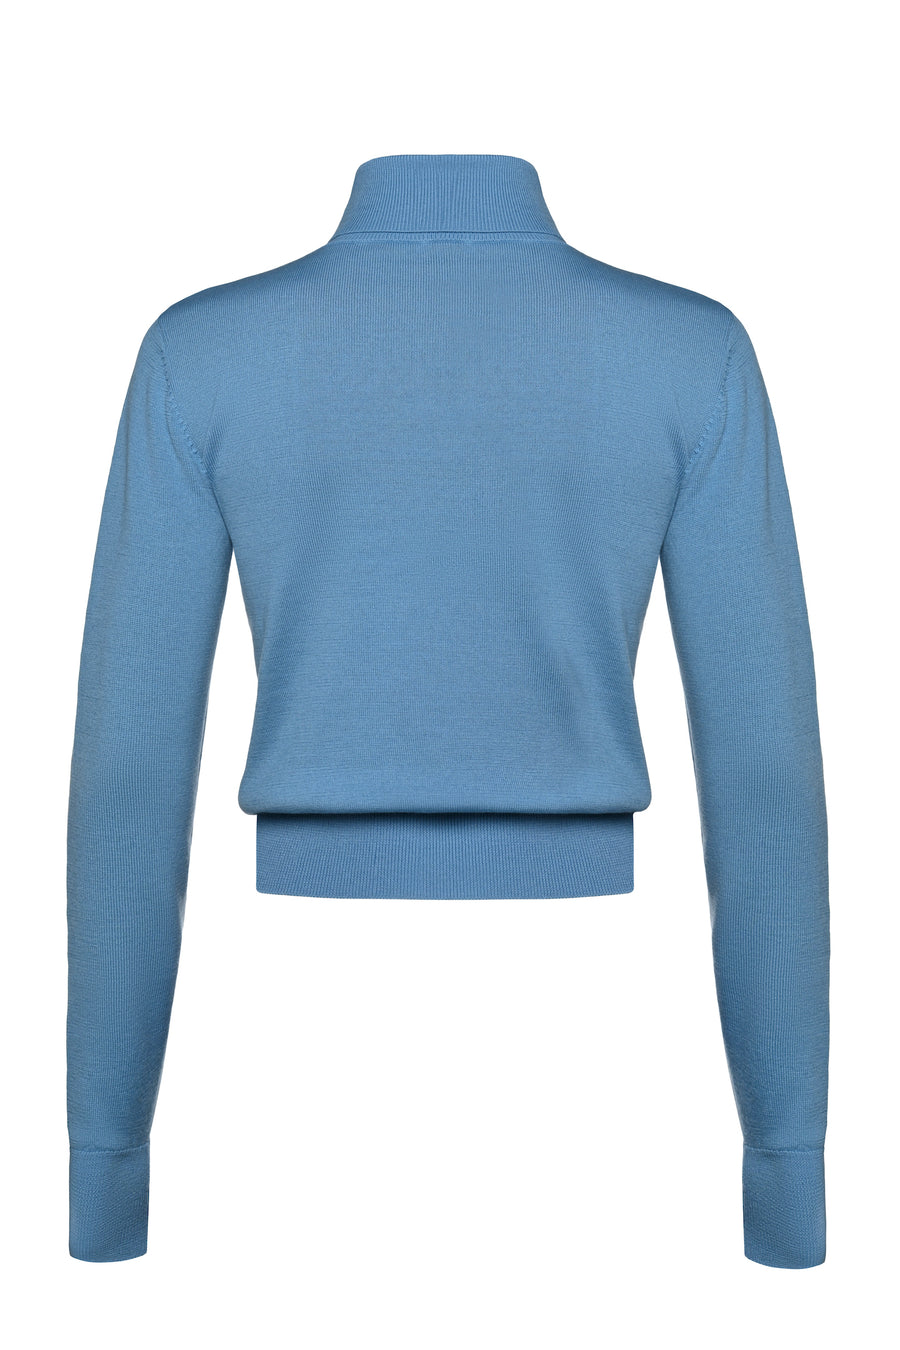 Wool Visible Bra Turtleneck Sweater